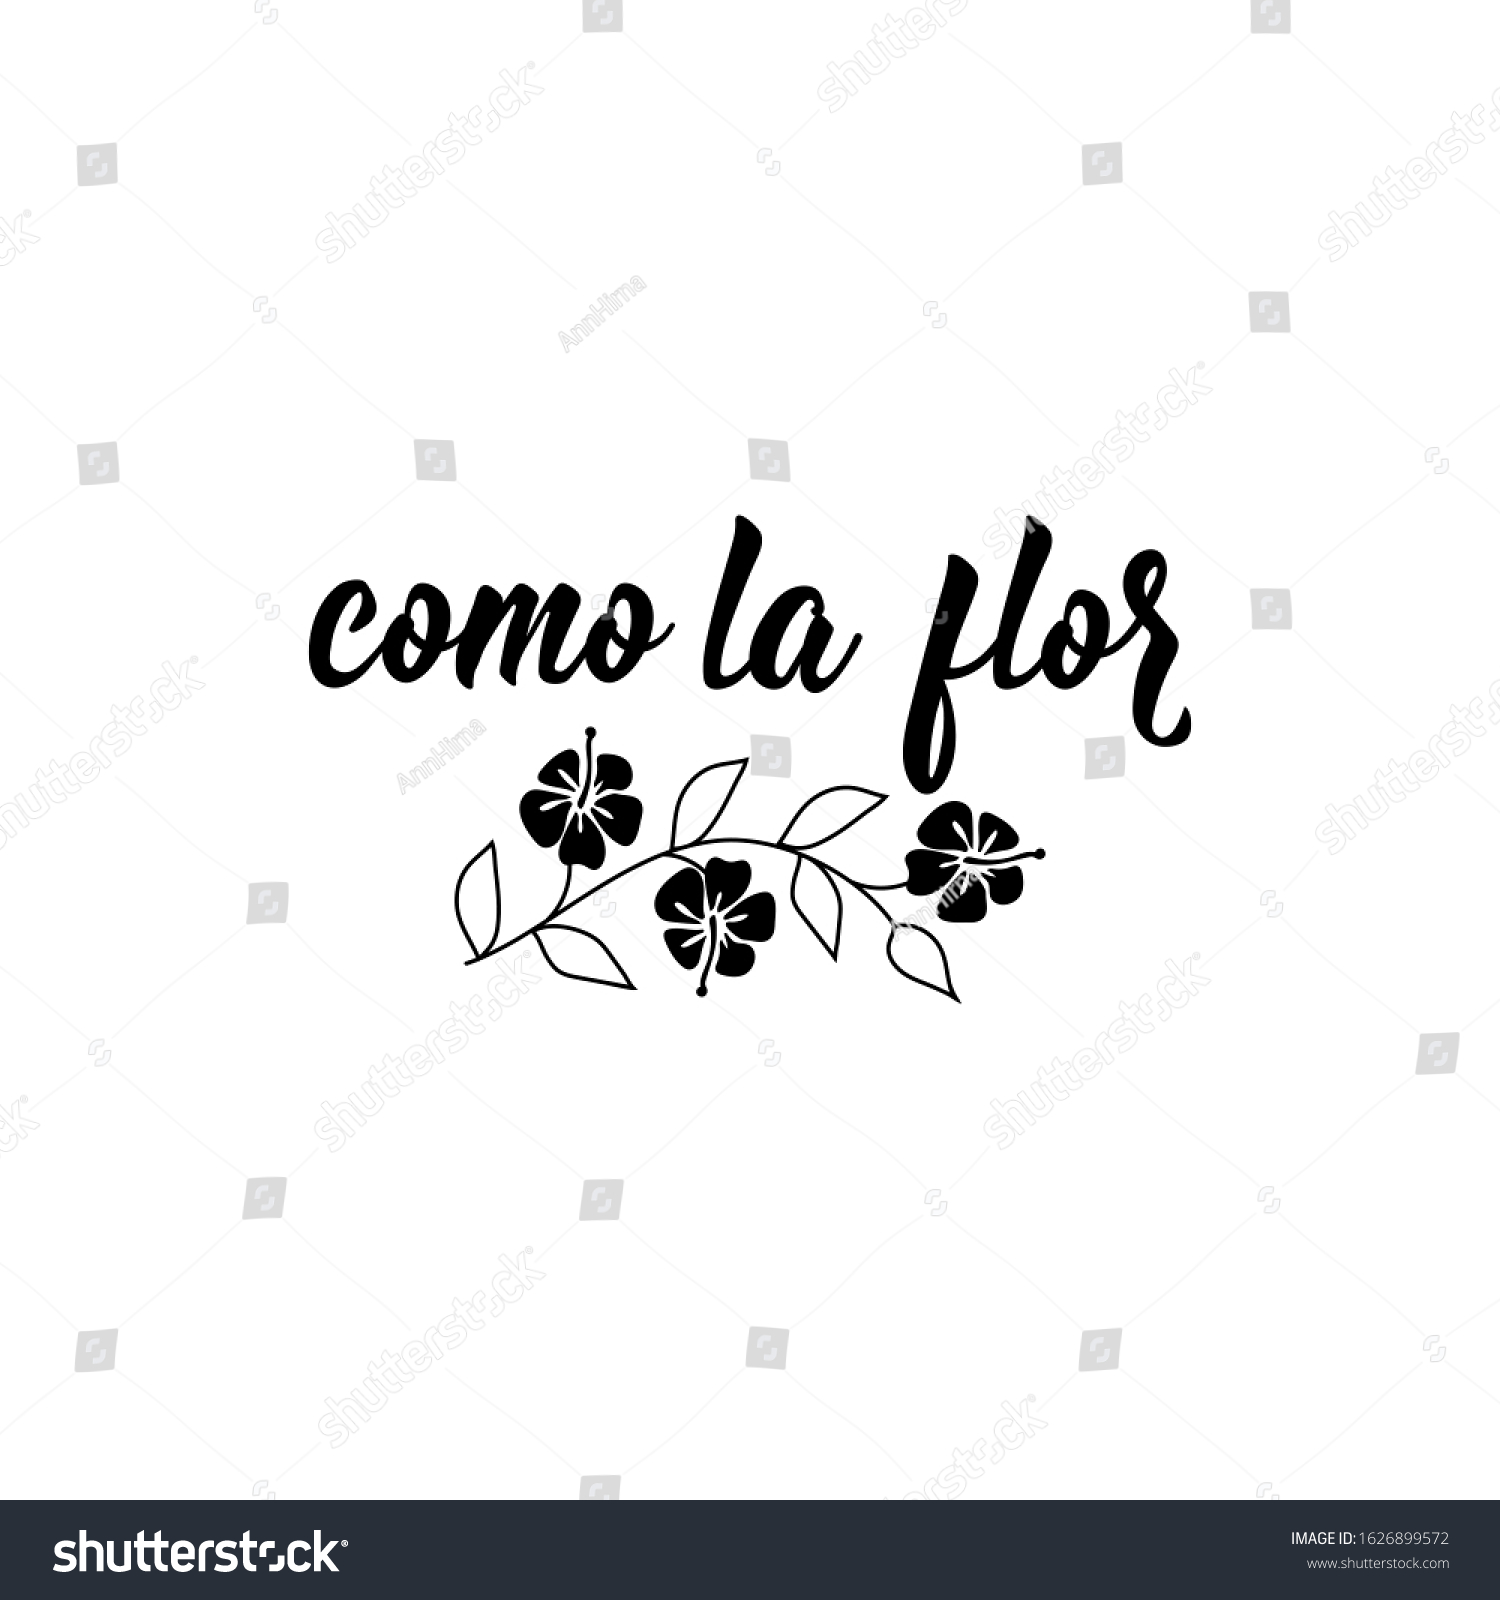 La flor in spanish